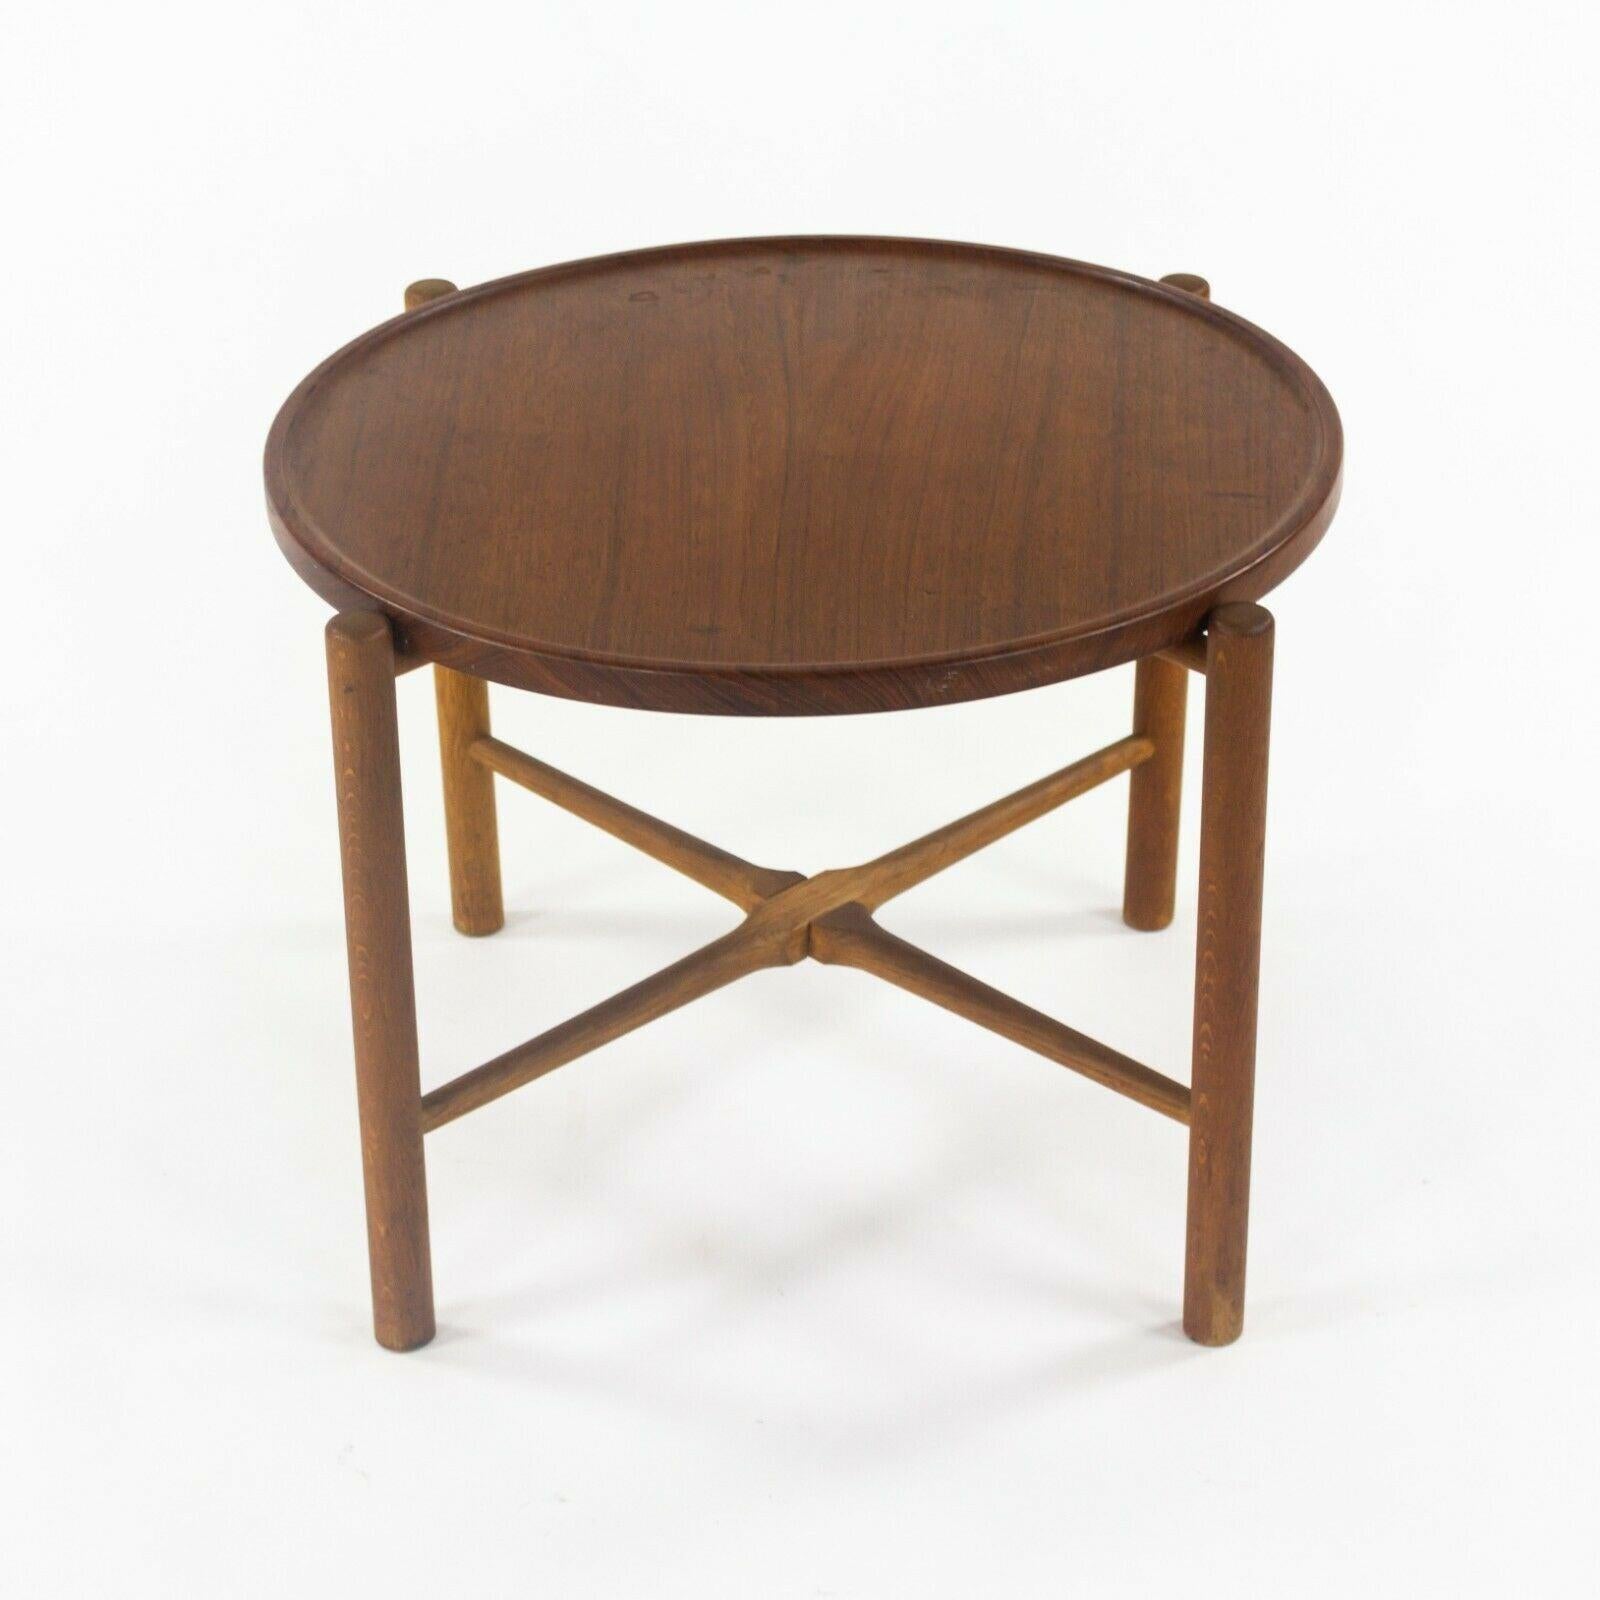 1960 PP35 Hans Wegner for &reas Tuck Folding Teak & Oak Side Table 2x Available For Sale 6